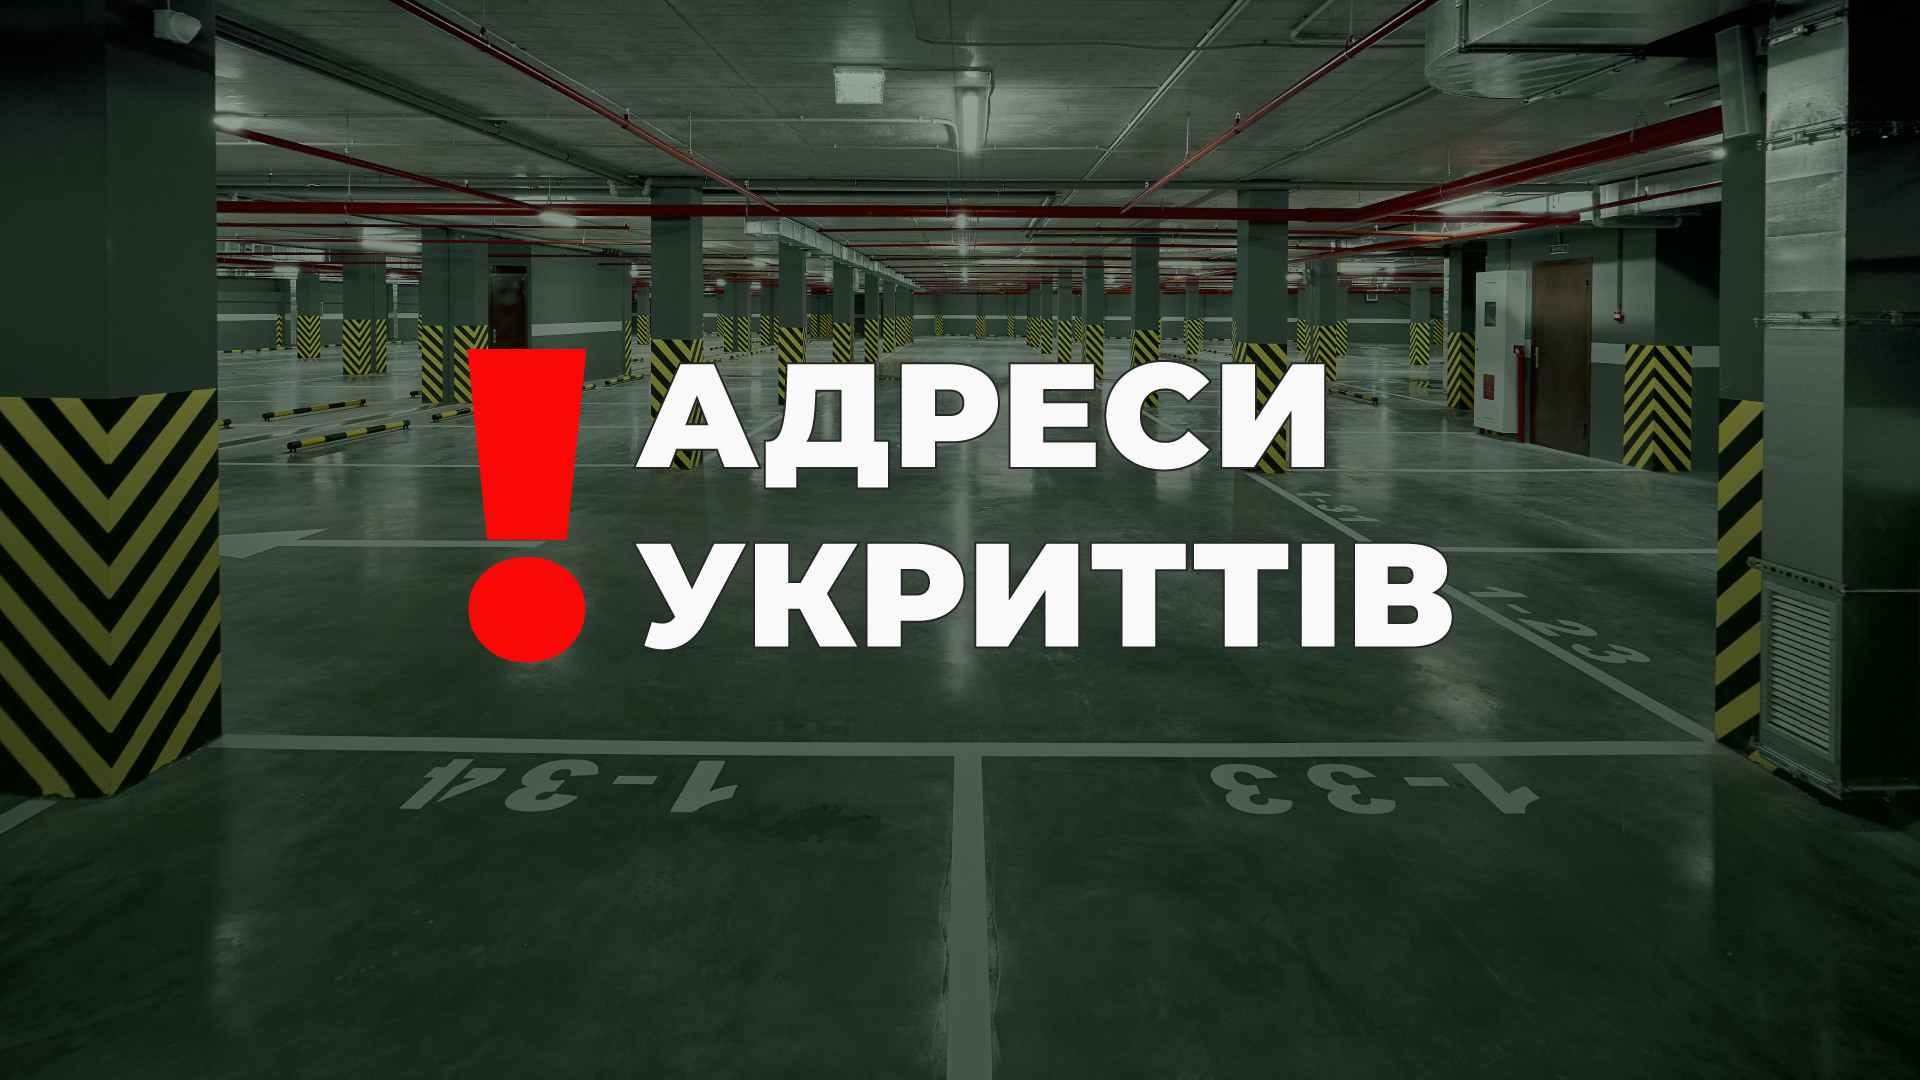 Вниманию всех жителей Одессы! Адреса укрытий в паркингах Жемчужин!